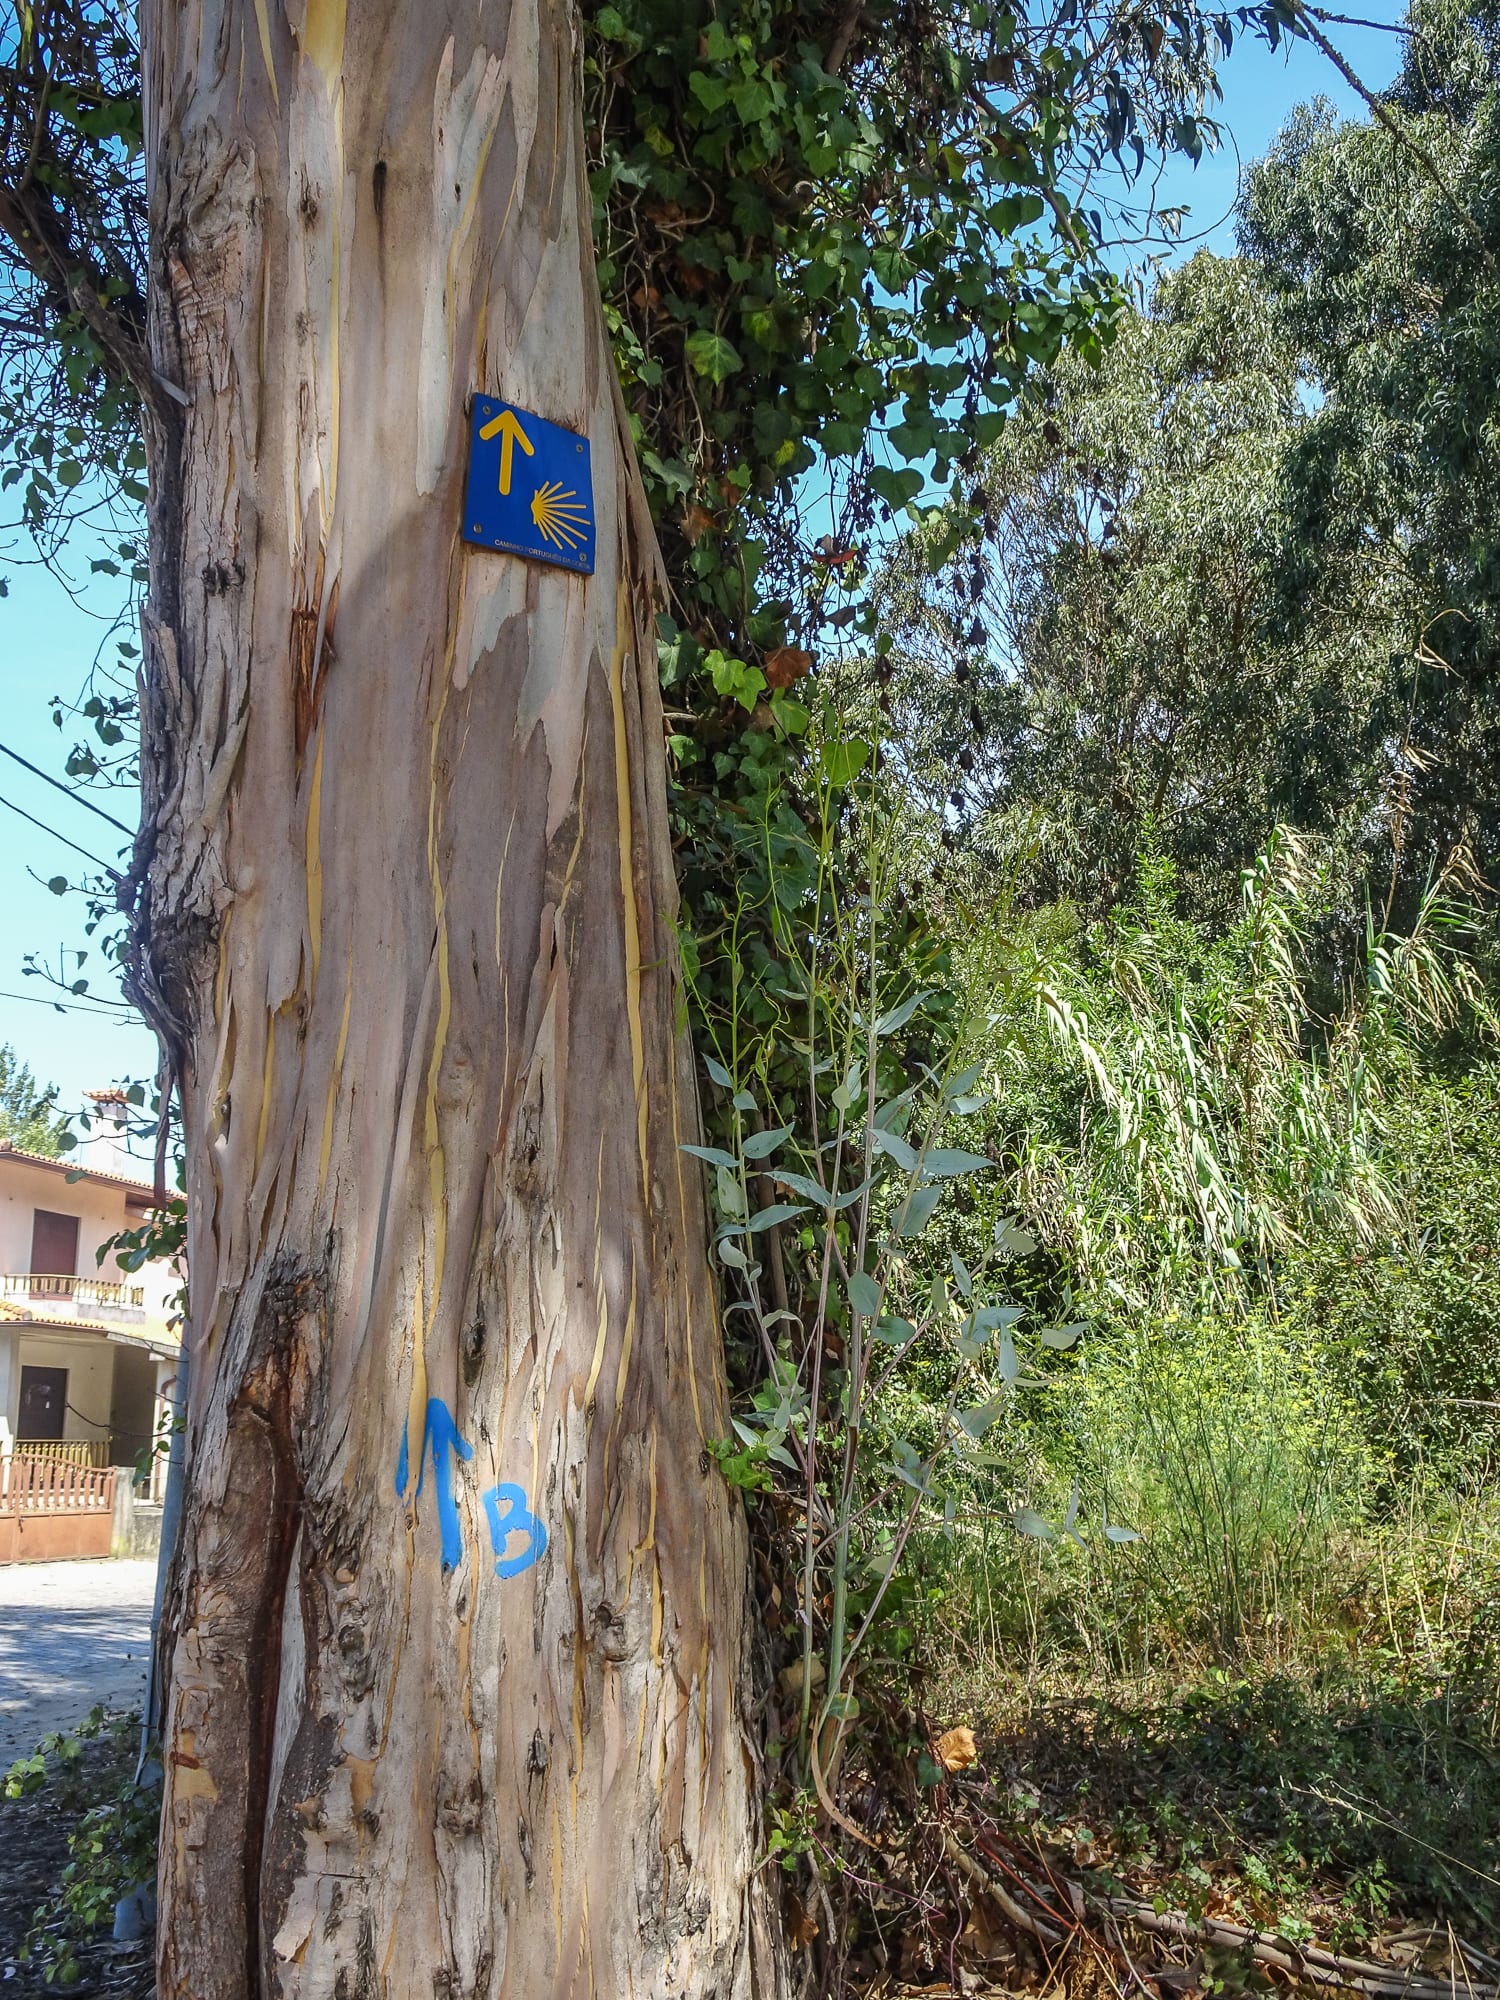 Jakobswegmarkierung am Baumstamm am Jakobsweg Portugal